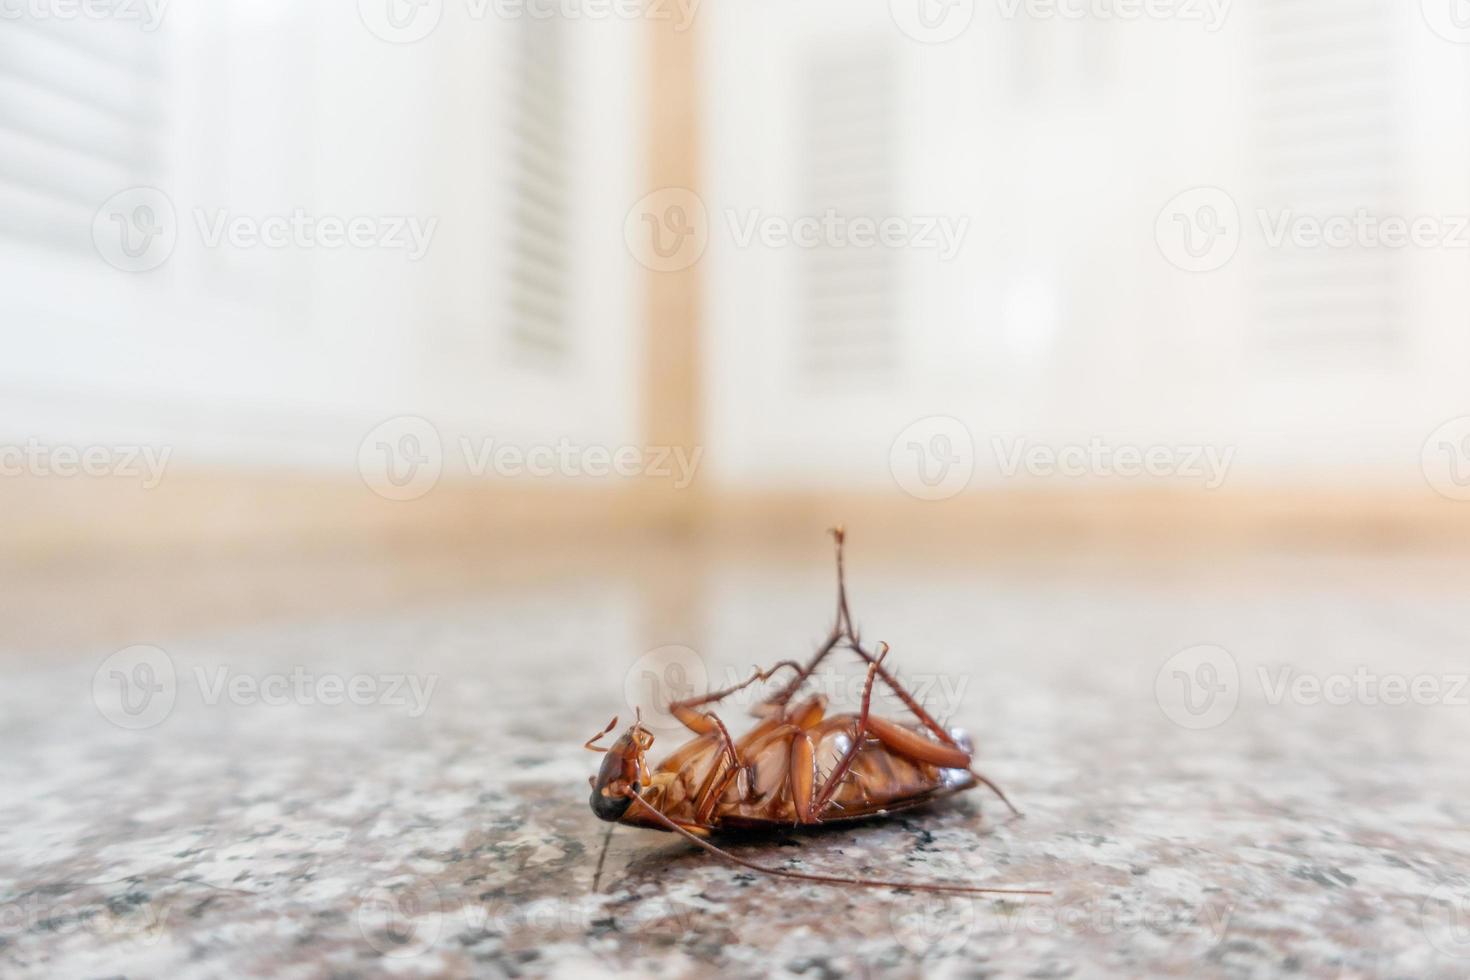 död kackerlacka på golvet foto